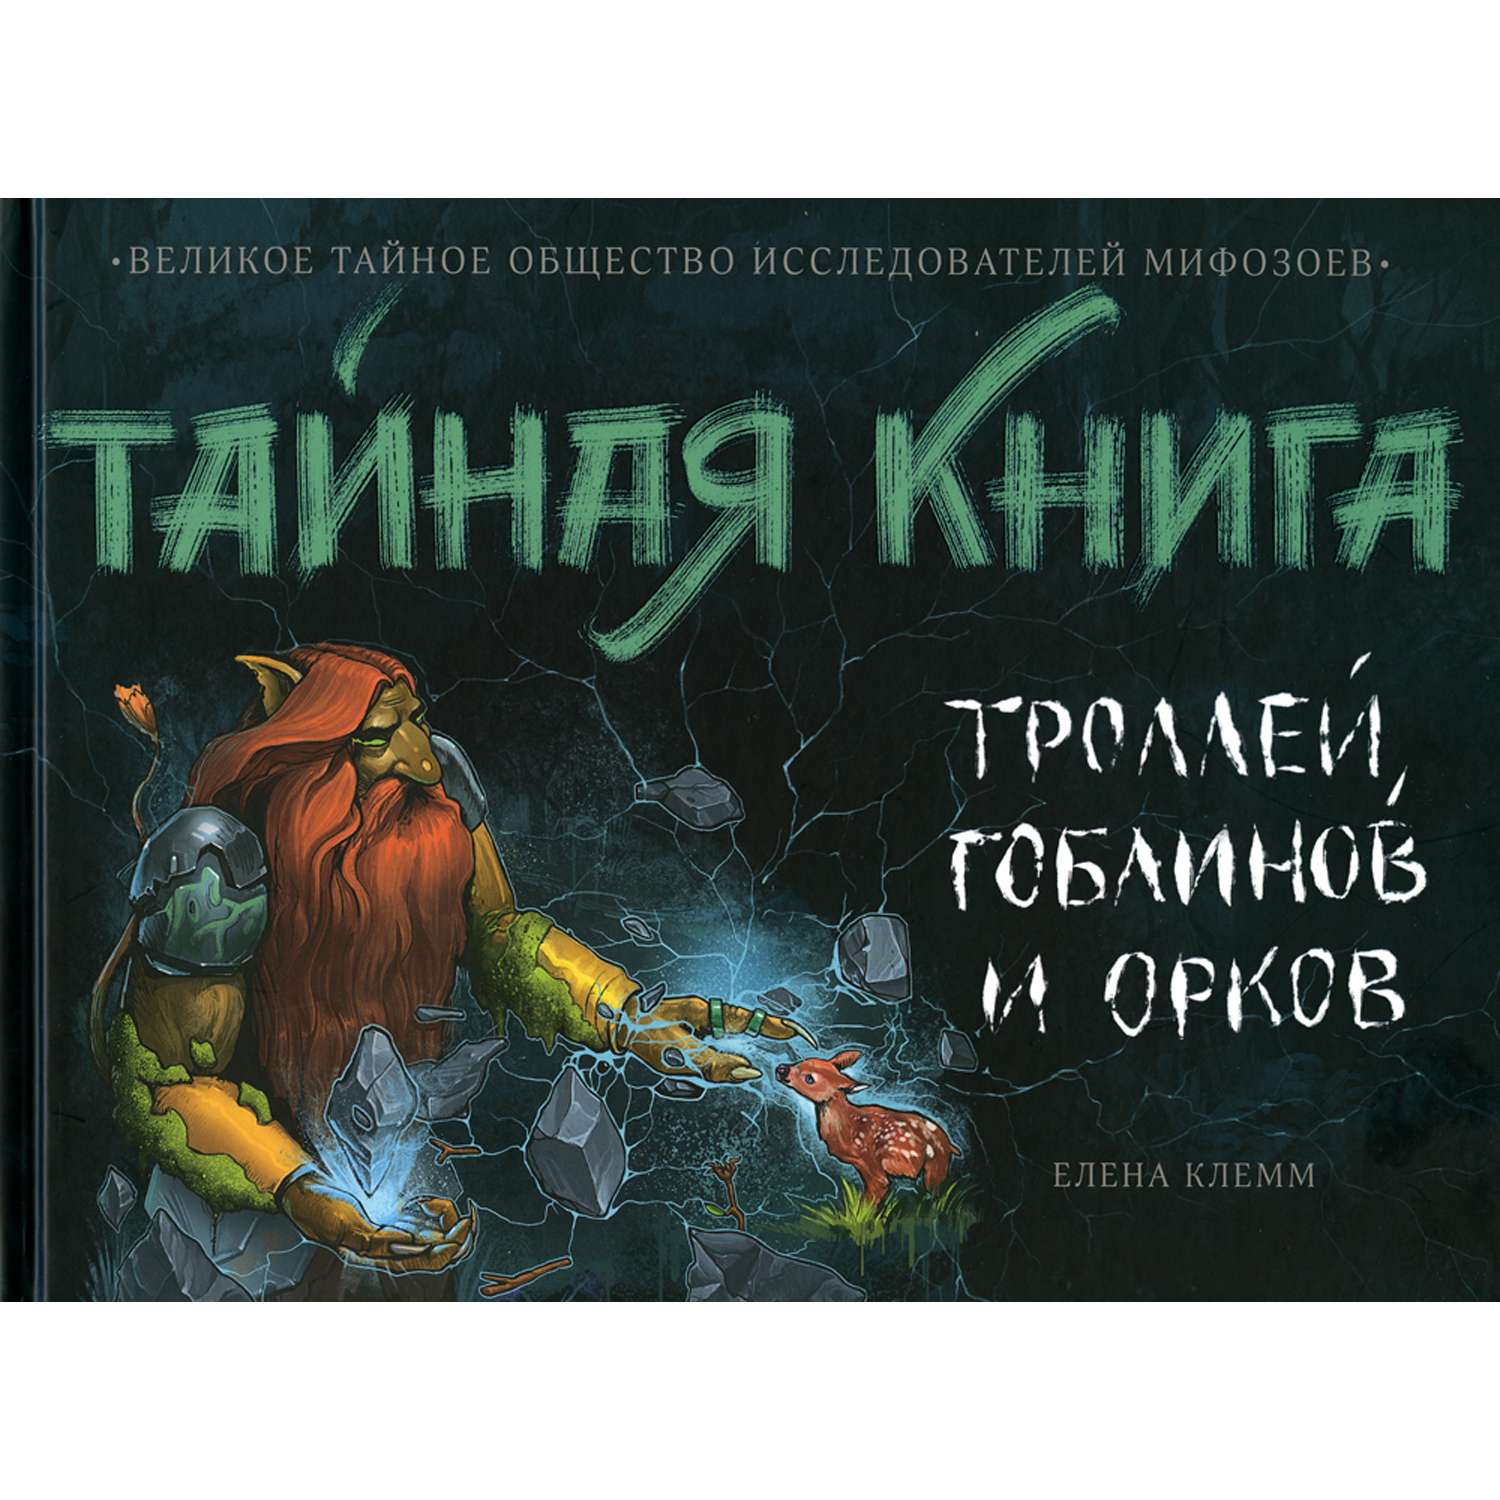 Детская литература АЙАР Тайная книга троллей гоблинов и орков - фото 1